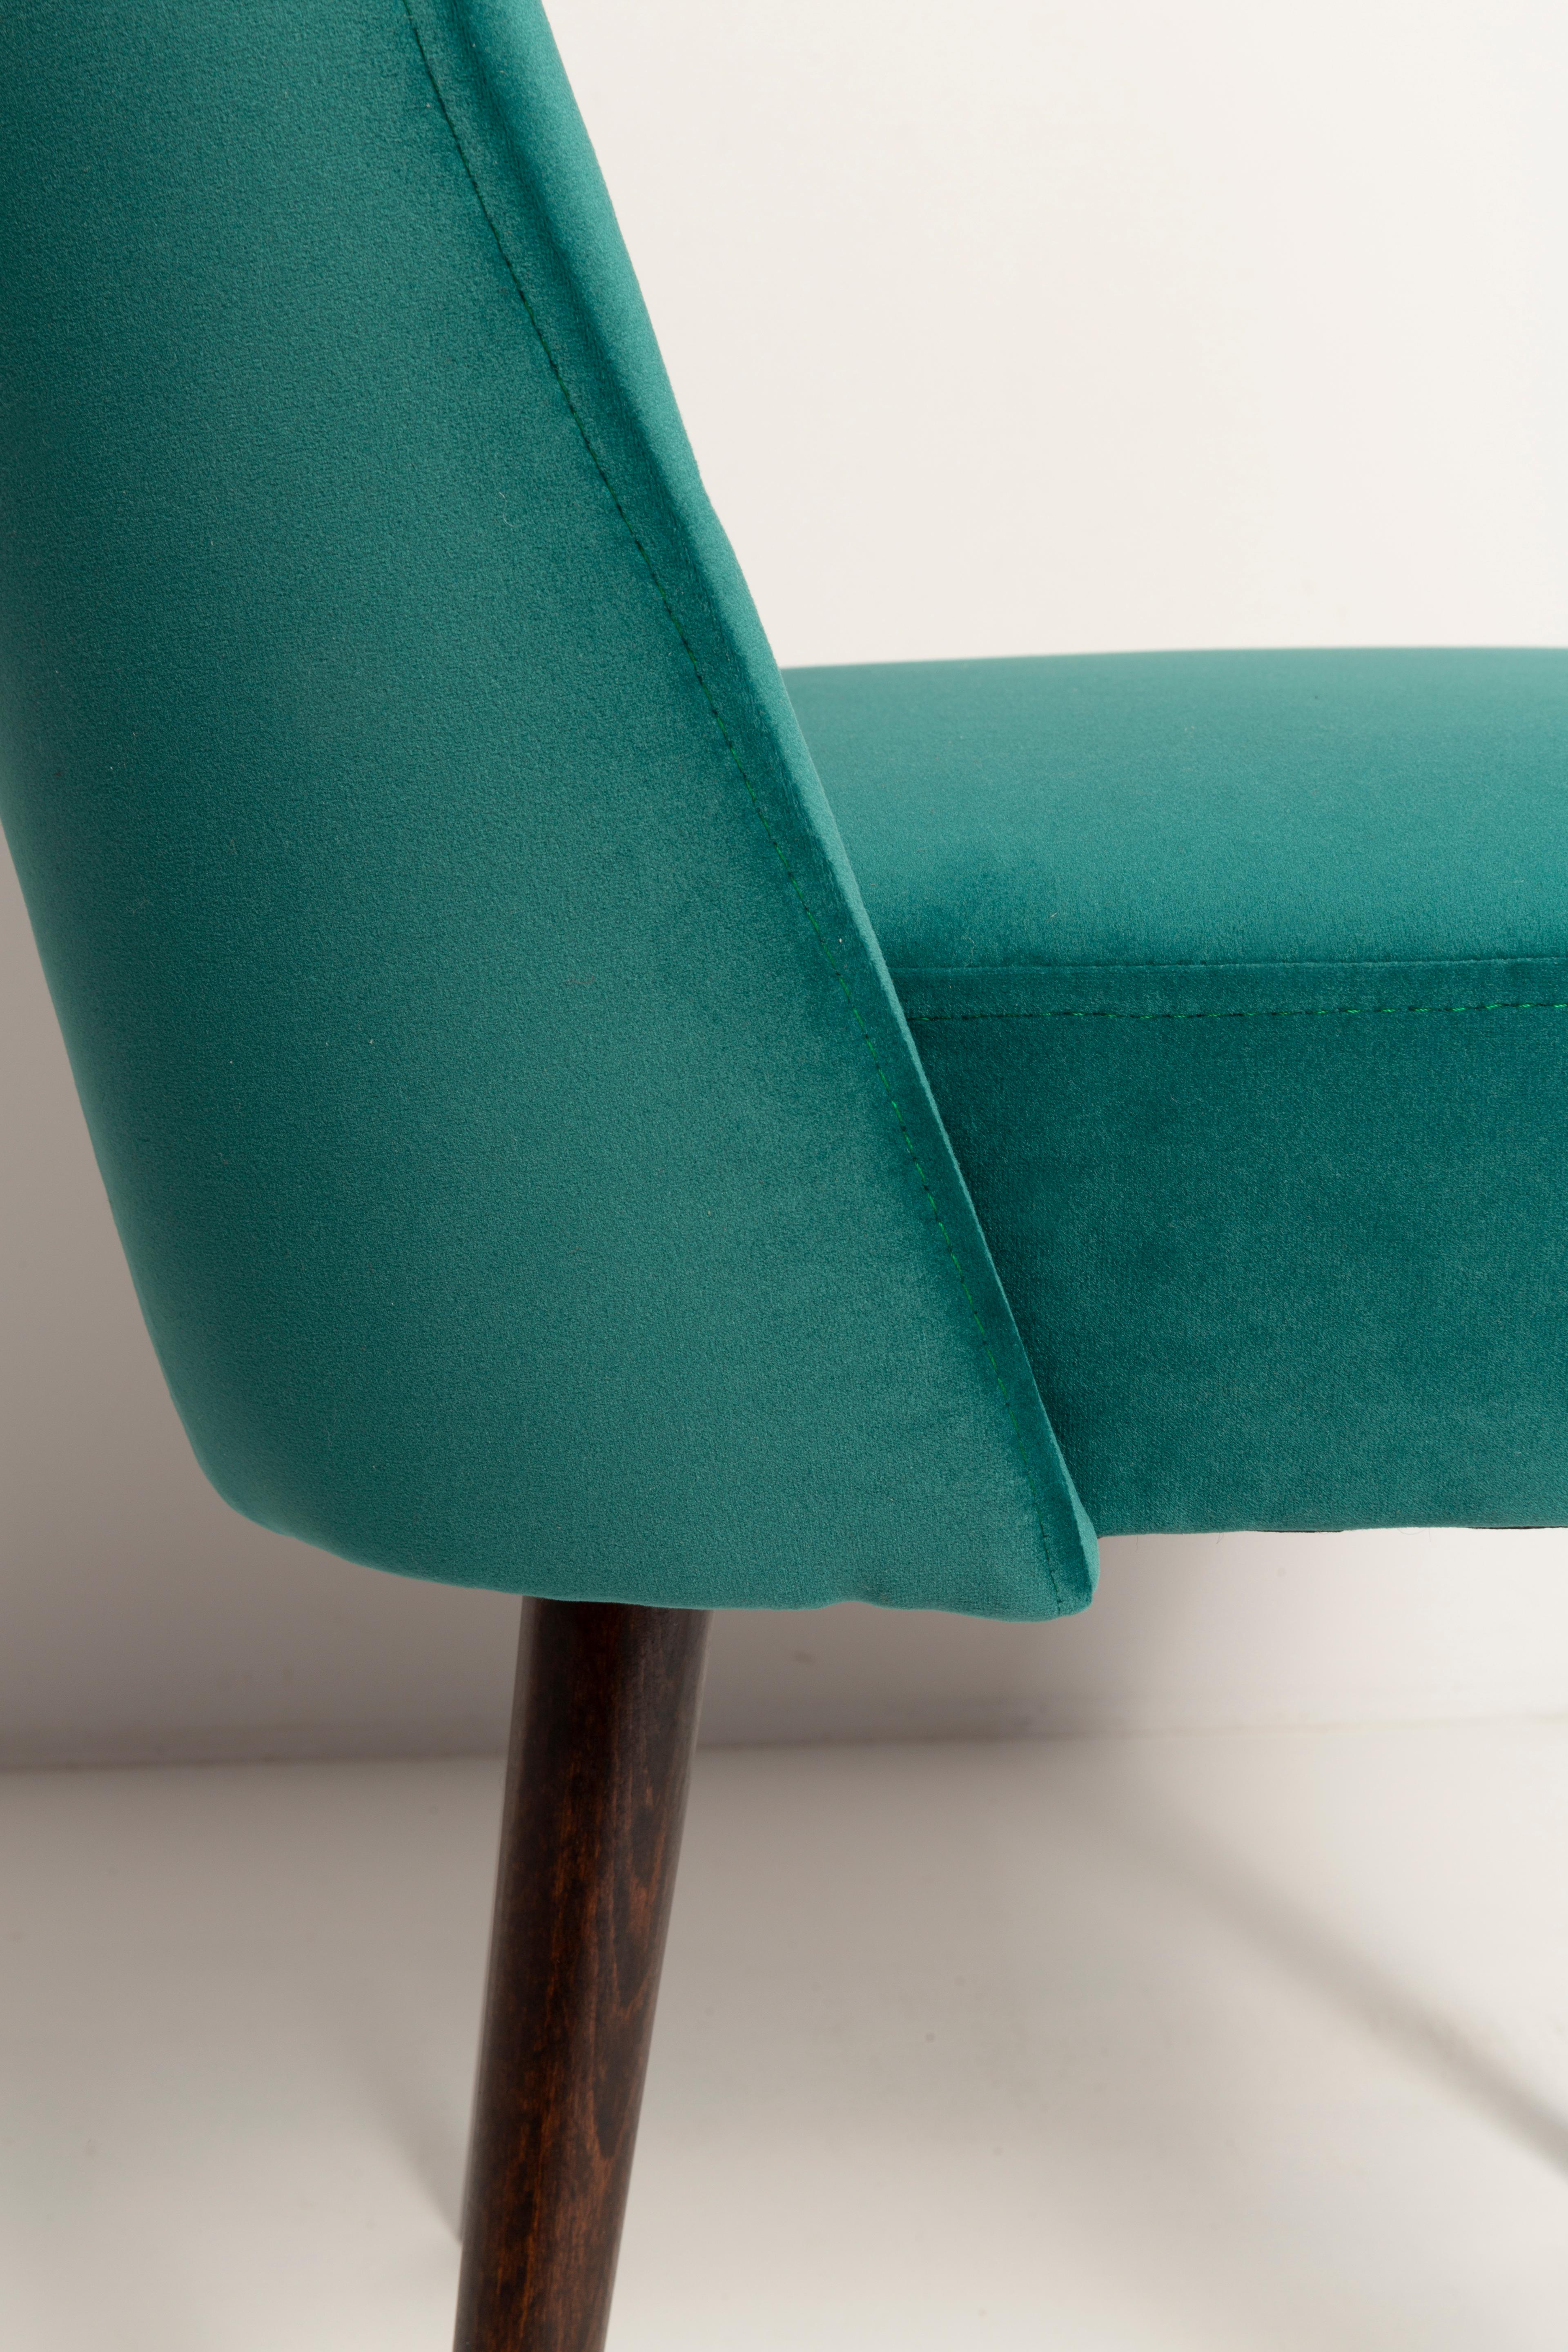 Dark Green Velvet 'Shell' Chair, Europe, 1960s For Sale 6